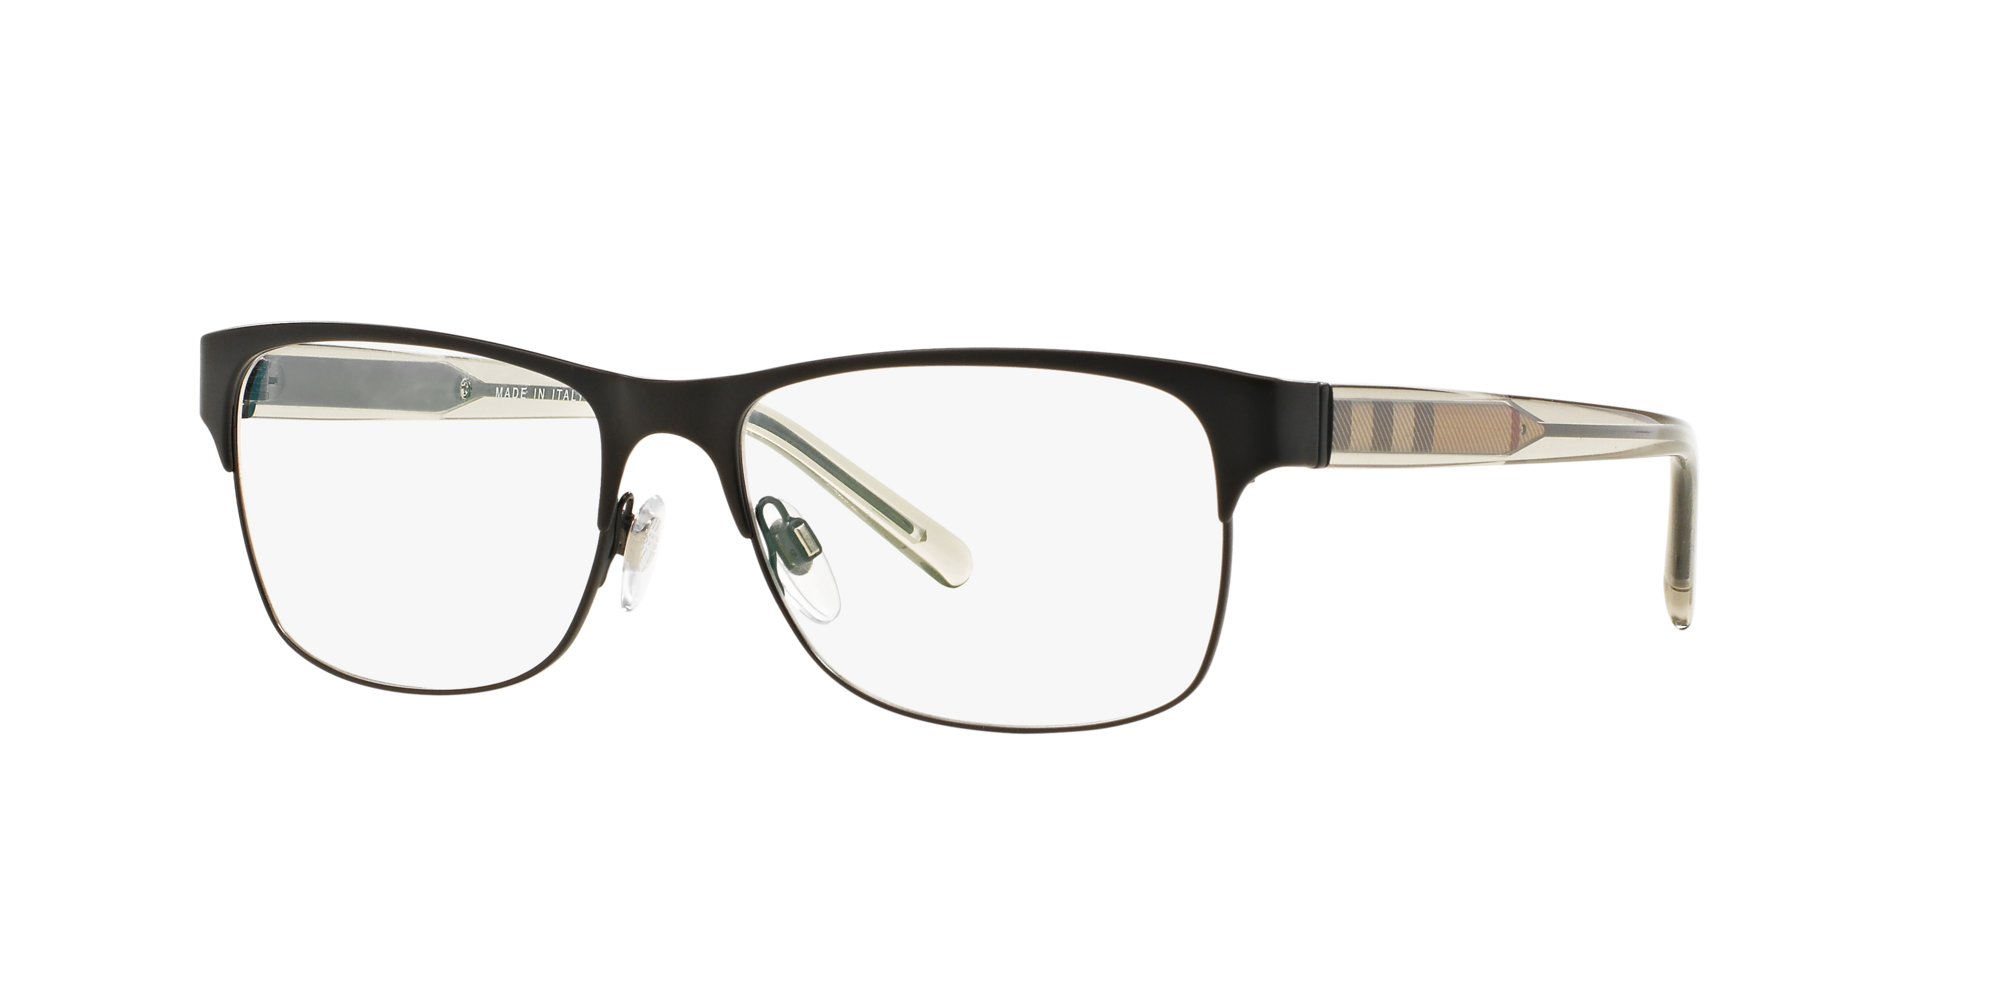 burberry designer glasses